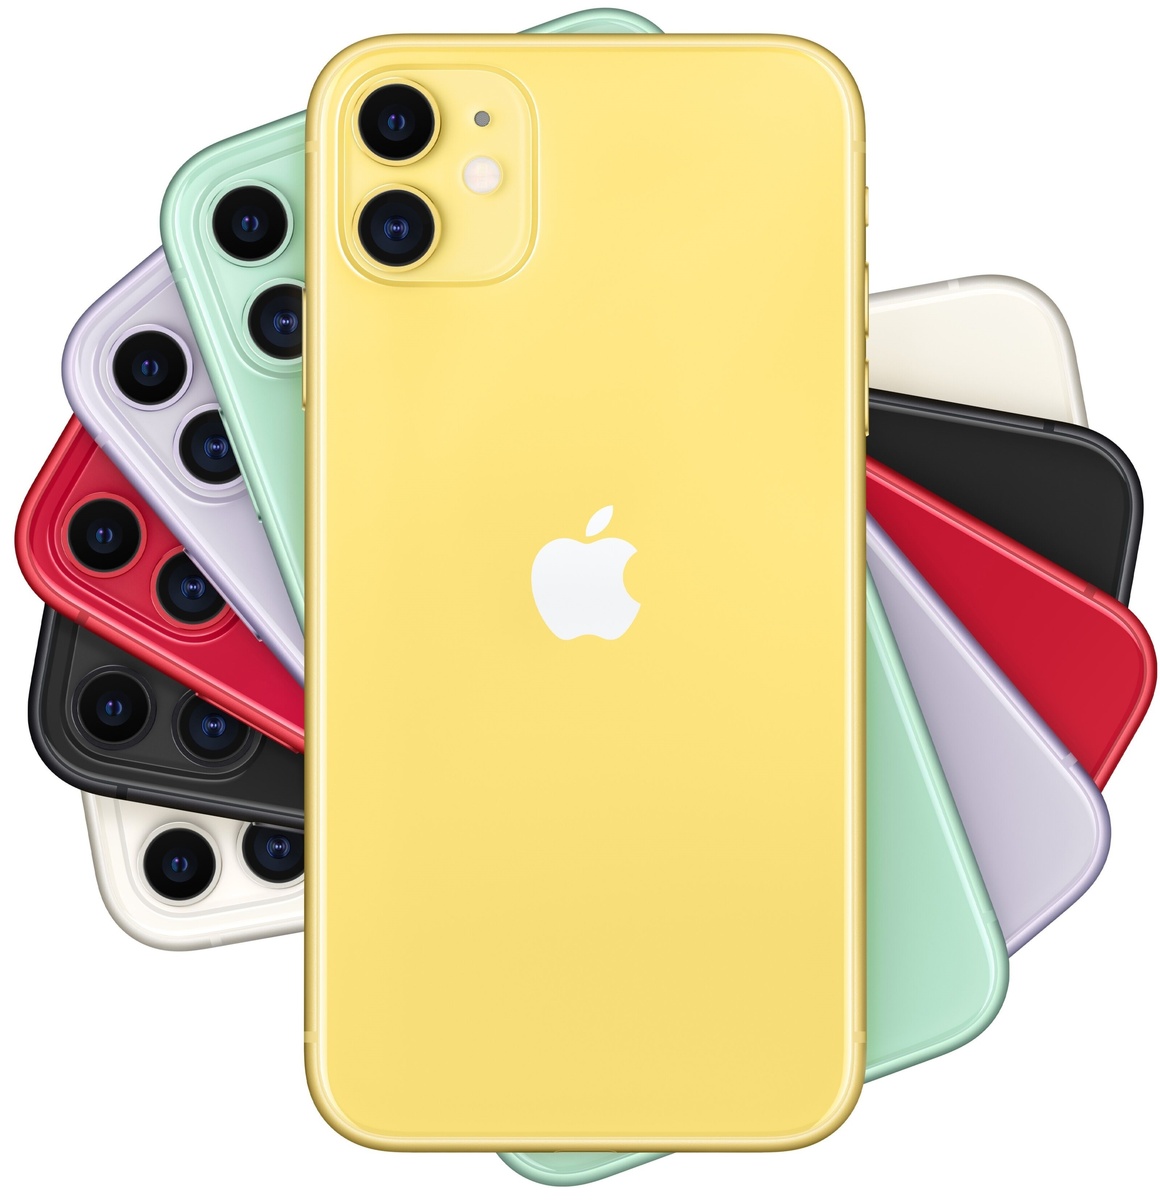 iPhone 11 256 Yellow MWLP2